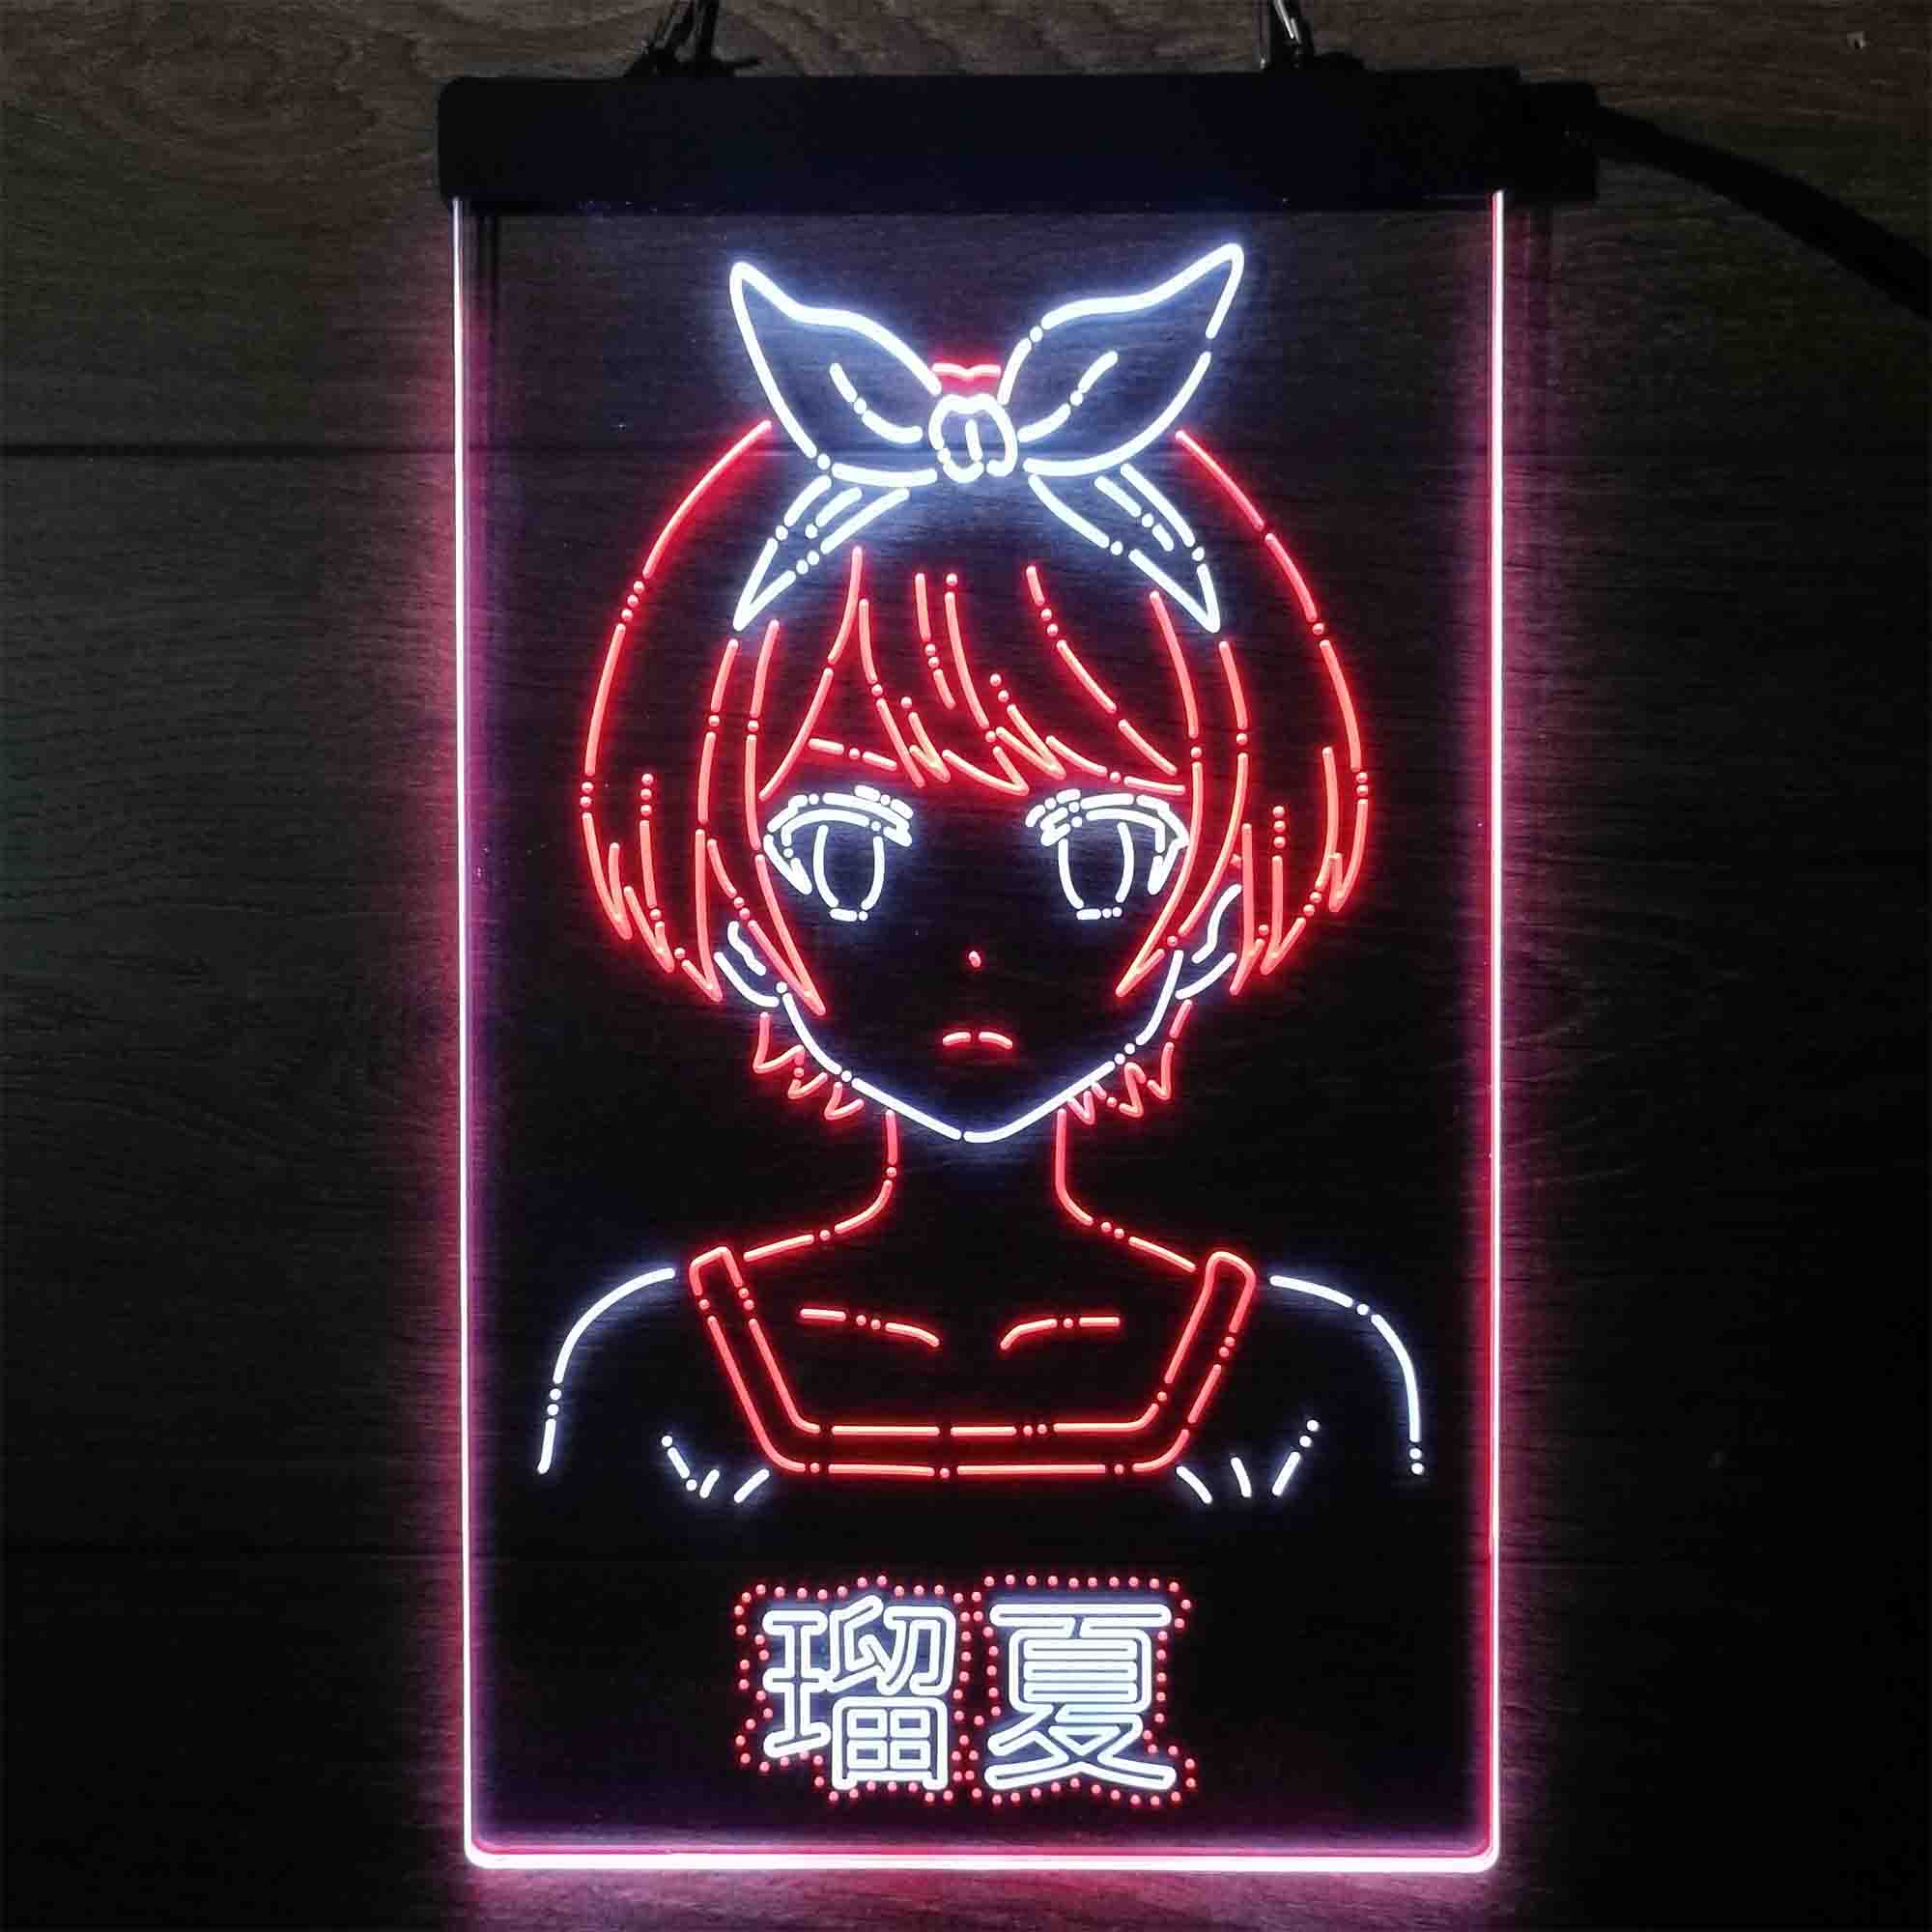 Source neon sign anime ANIME PRETTY GIRL LED NEON SIGN on malibabacom